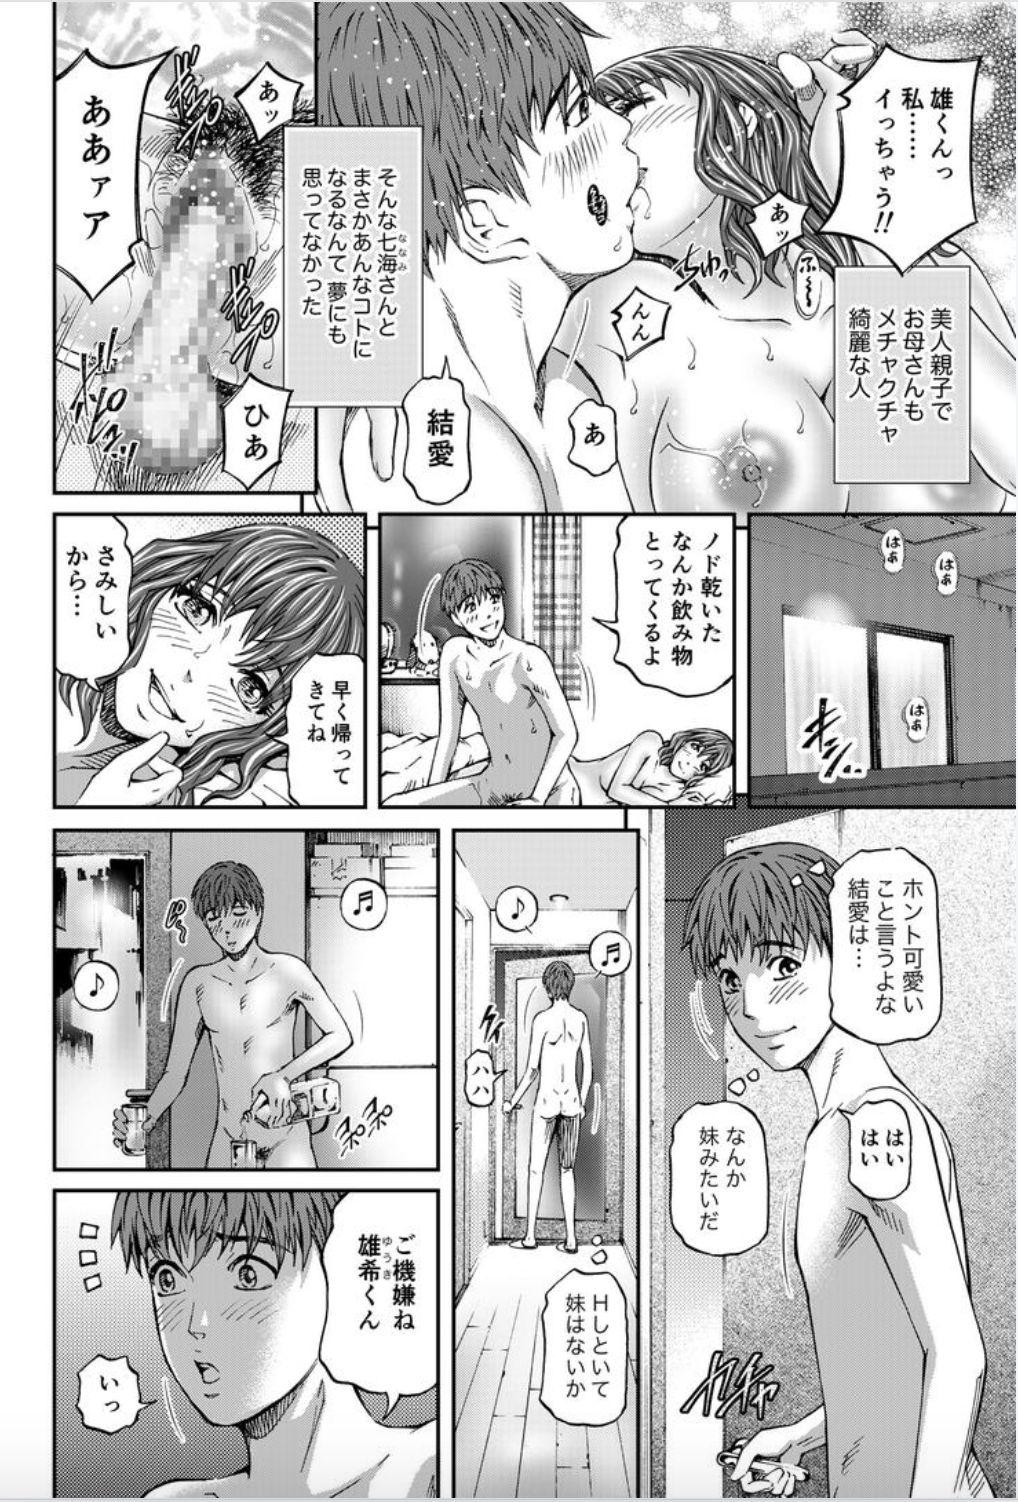 Beautiful Onna-tachi ga Iku Toki... Ero Drama Vol. 8 Datte, Kanojo no Haha ga... Sloppy Blow Job - Page 4